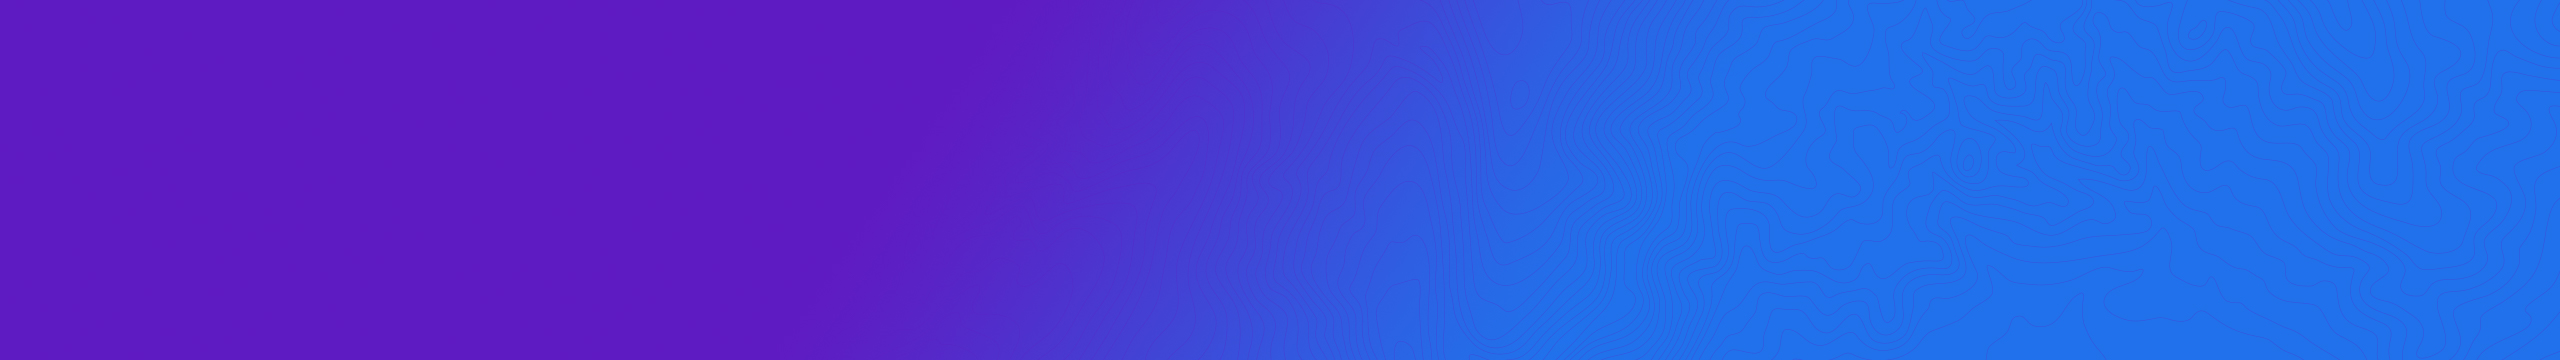 Bläulich-violetter Hintergrund mit Wellenlinien auf der rechten Seite